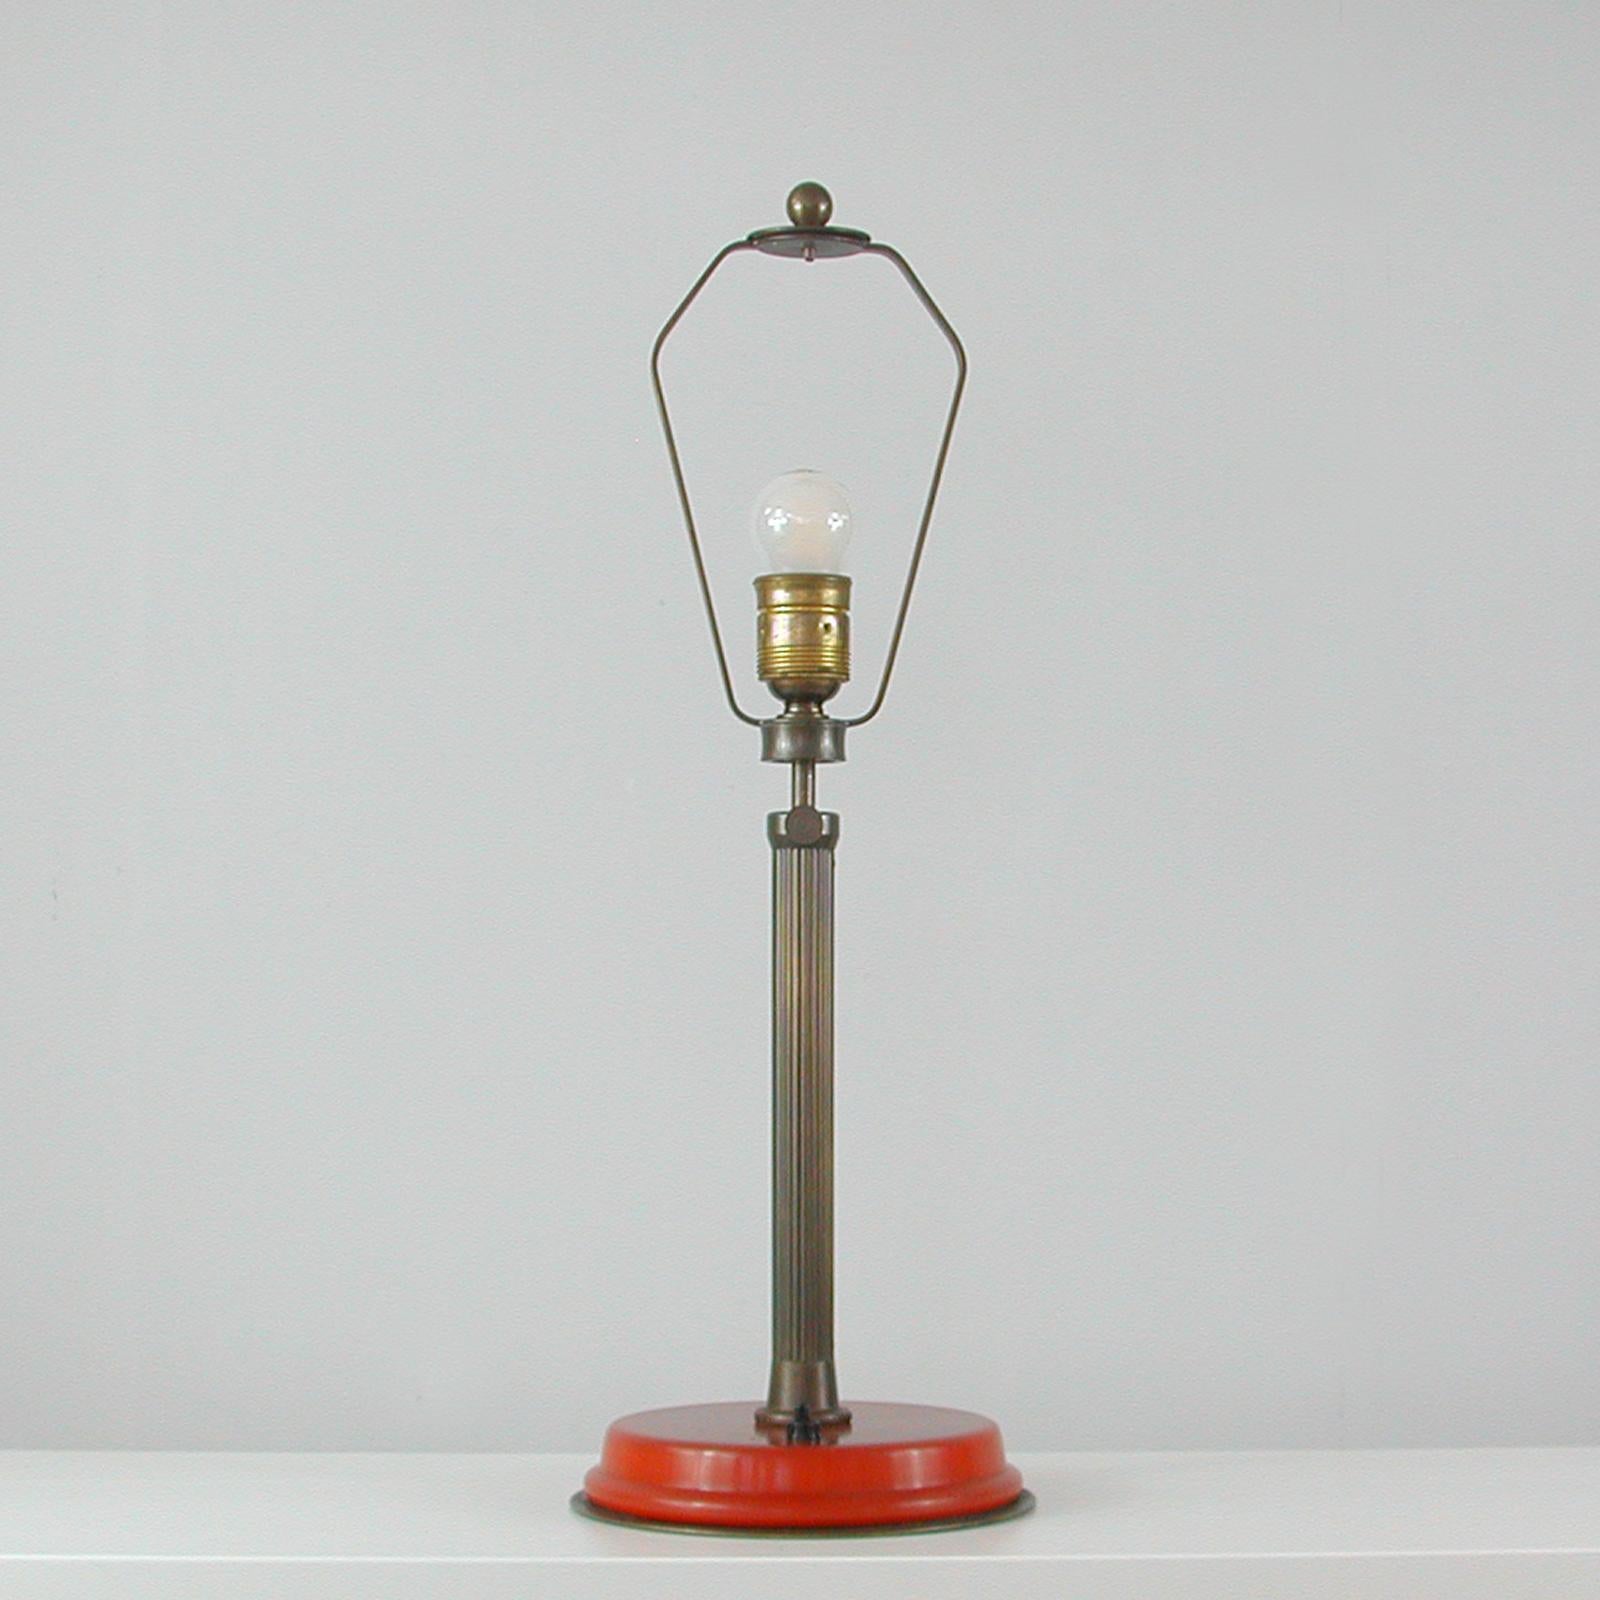 Diese ungewöhnliche Art-Déco-Tischlampe wurde in den 1920er bis 1930er Jahren in Deutschland entworfen und hergestellt. Er verfügt über einen höhenverstellbaren Korpus aus bronziertem Messing auf einem rot/rubin/karminroten Bakelit-Sockel. Sehr